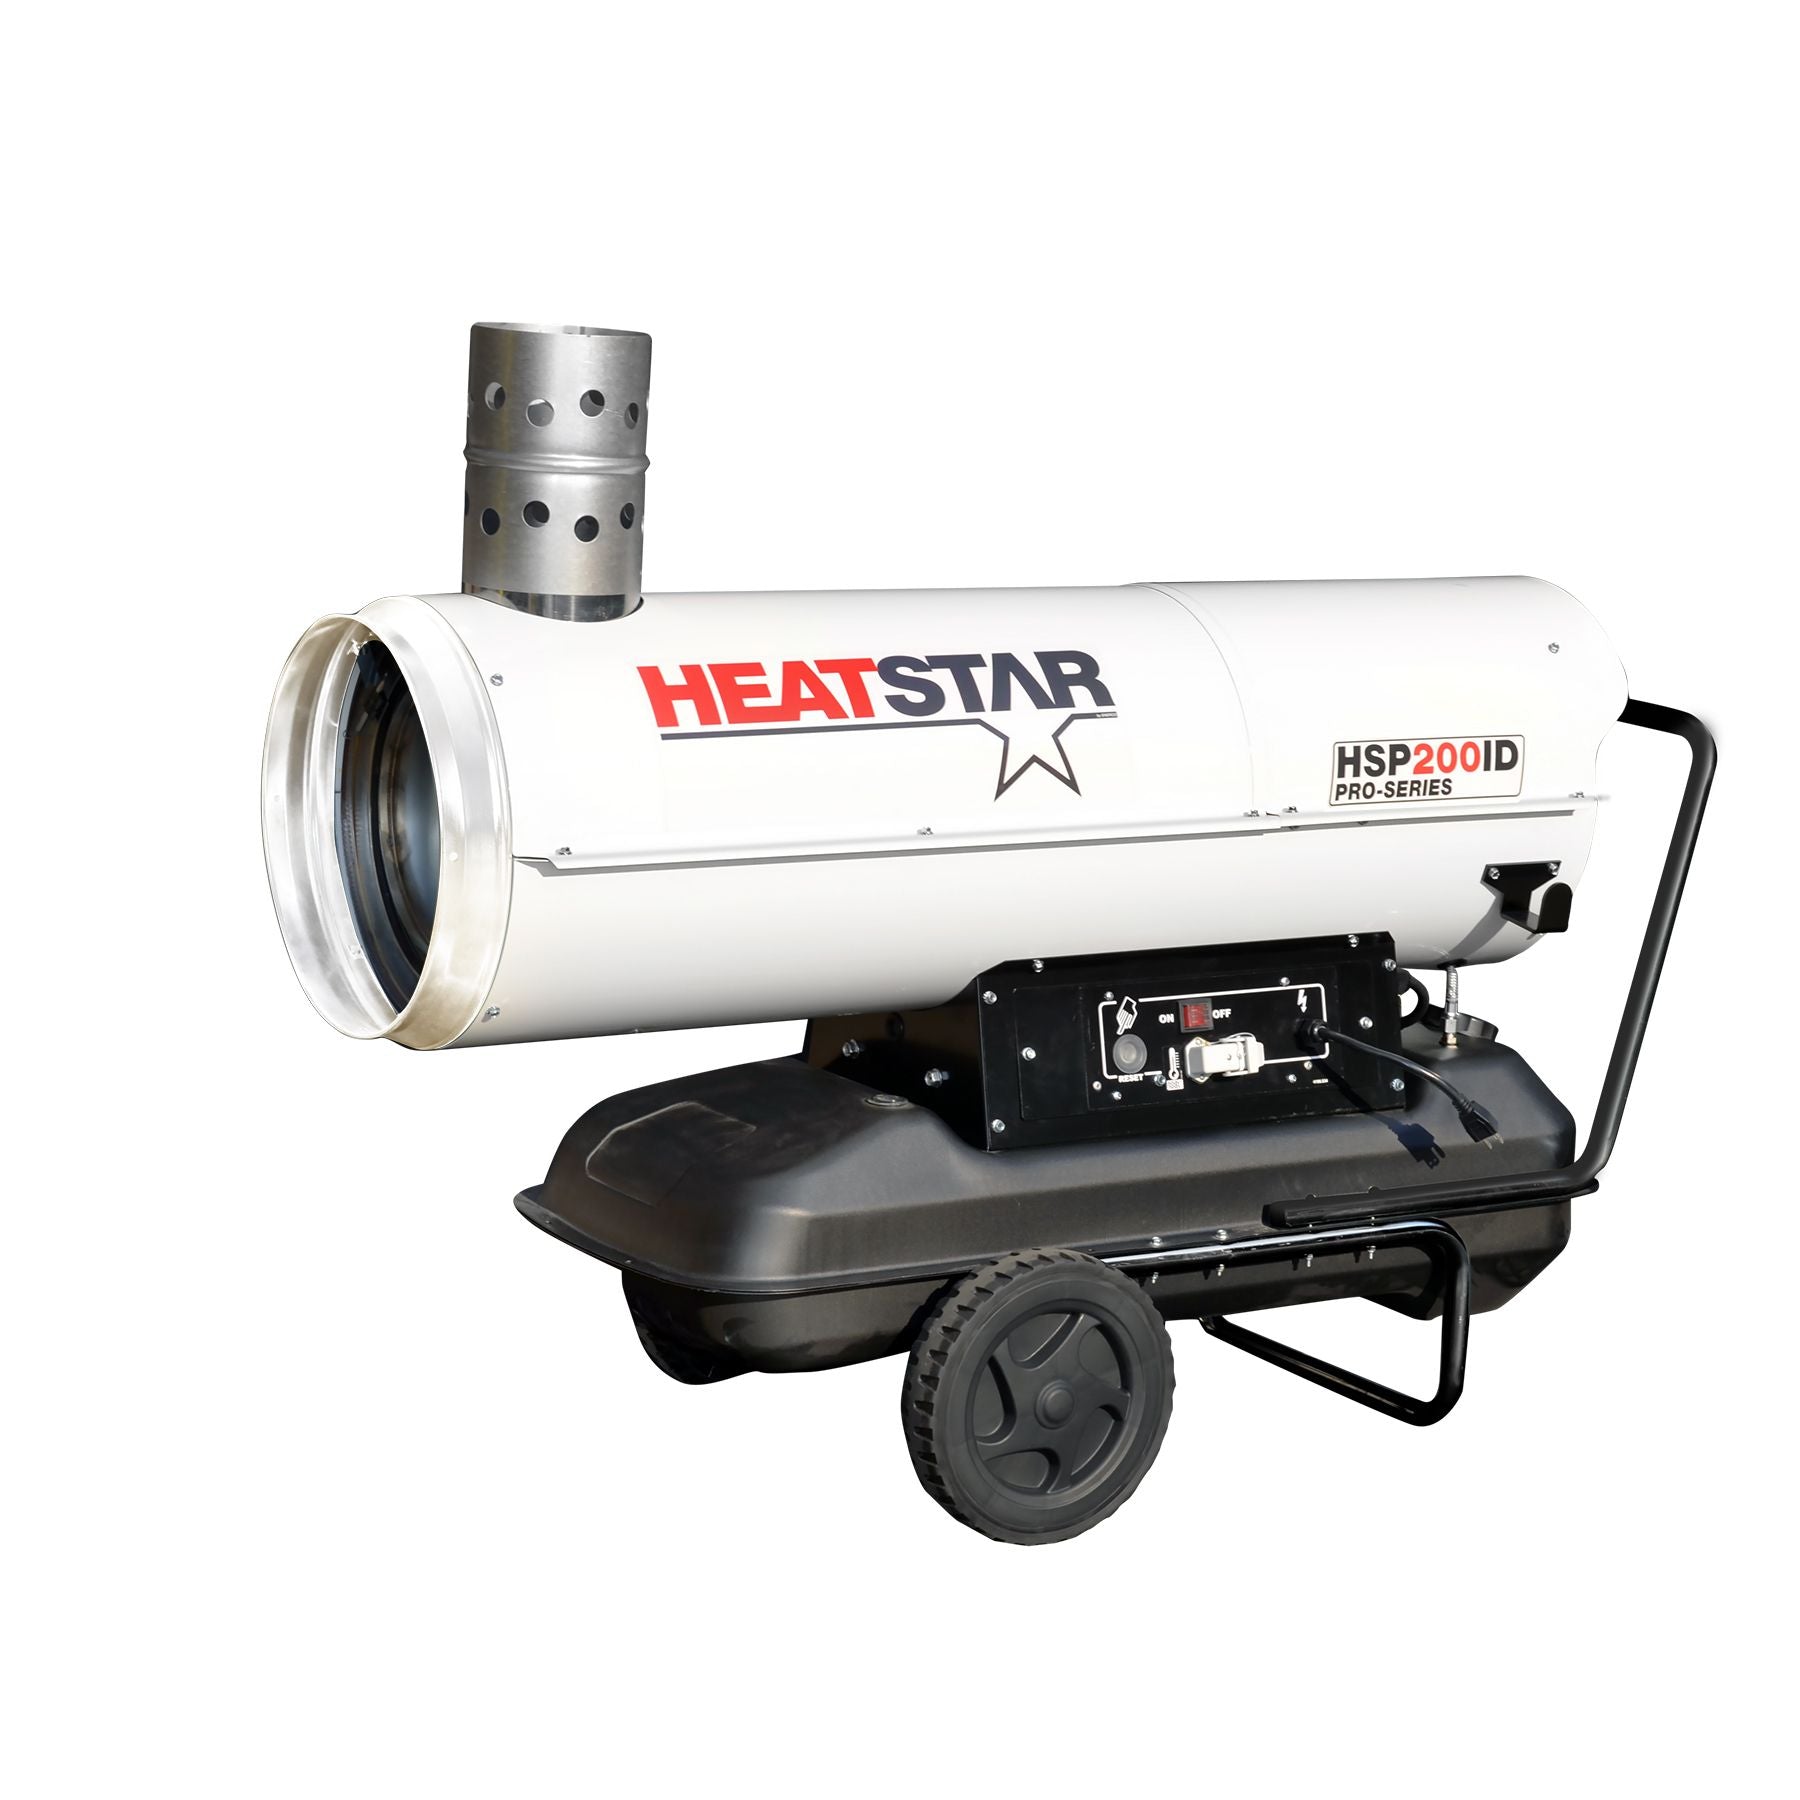 Heatstar HSP200ID Pro-Series Diesel/Oil Indirect Fired Heater - 180,000 BTU/HR